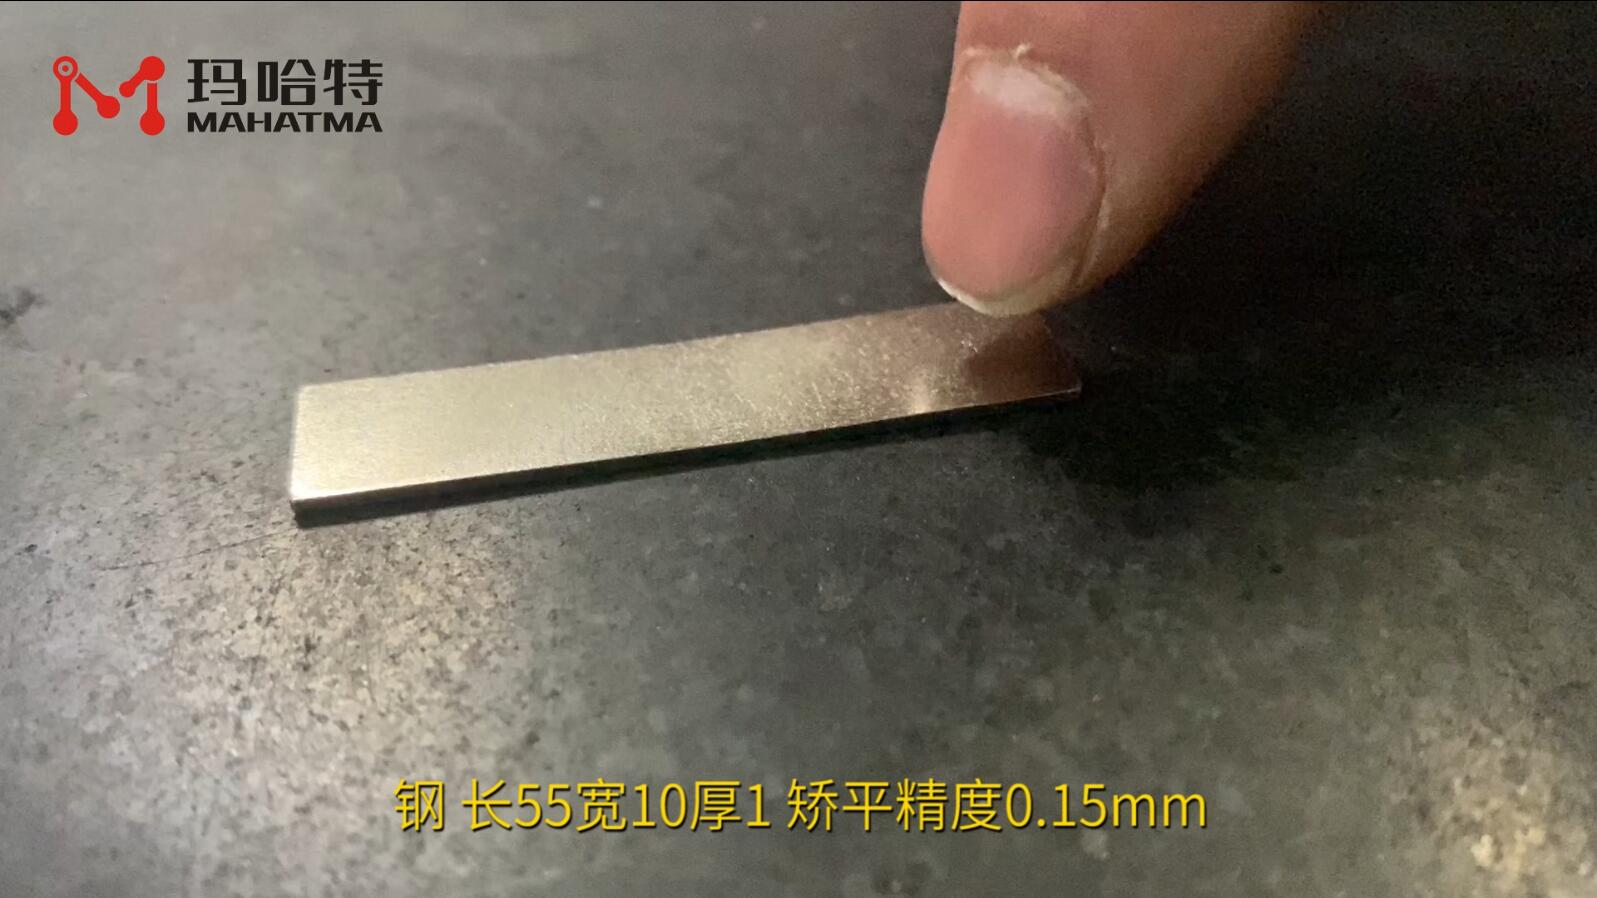 钢 MHT15-300 长方形 长55宽10厚1 矫平精度0.15mm